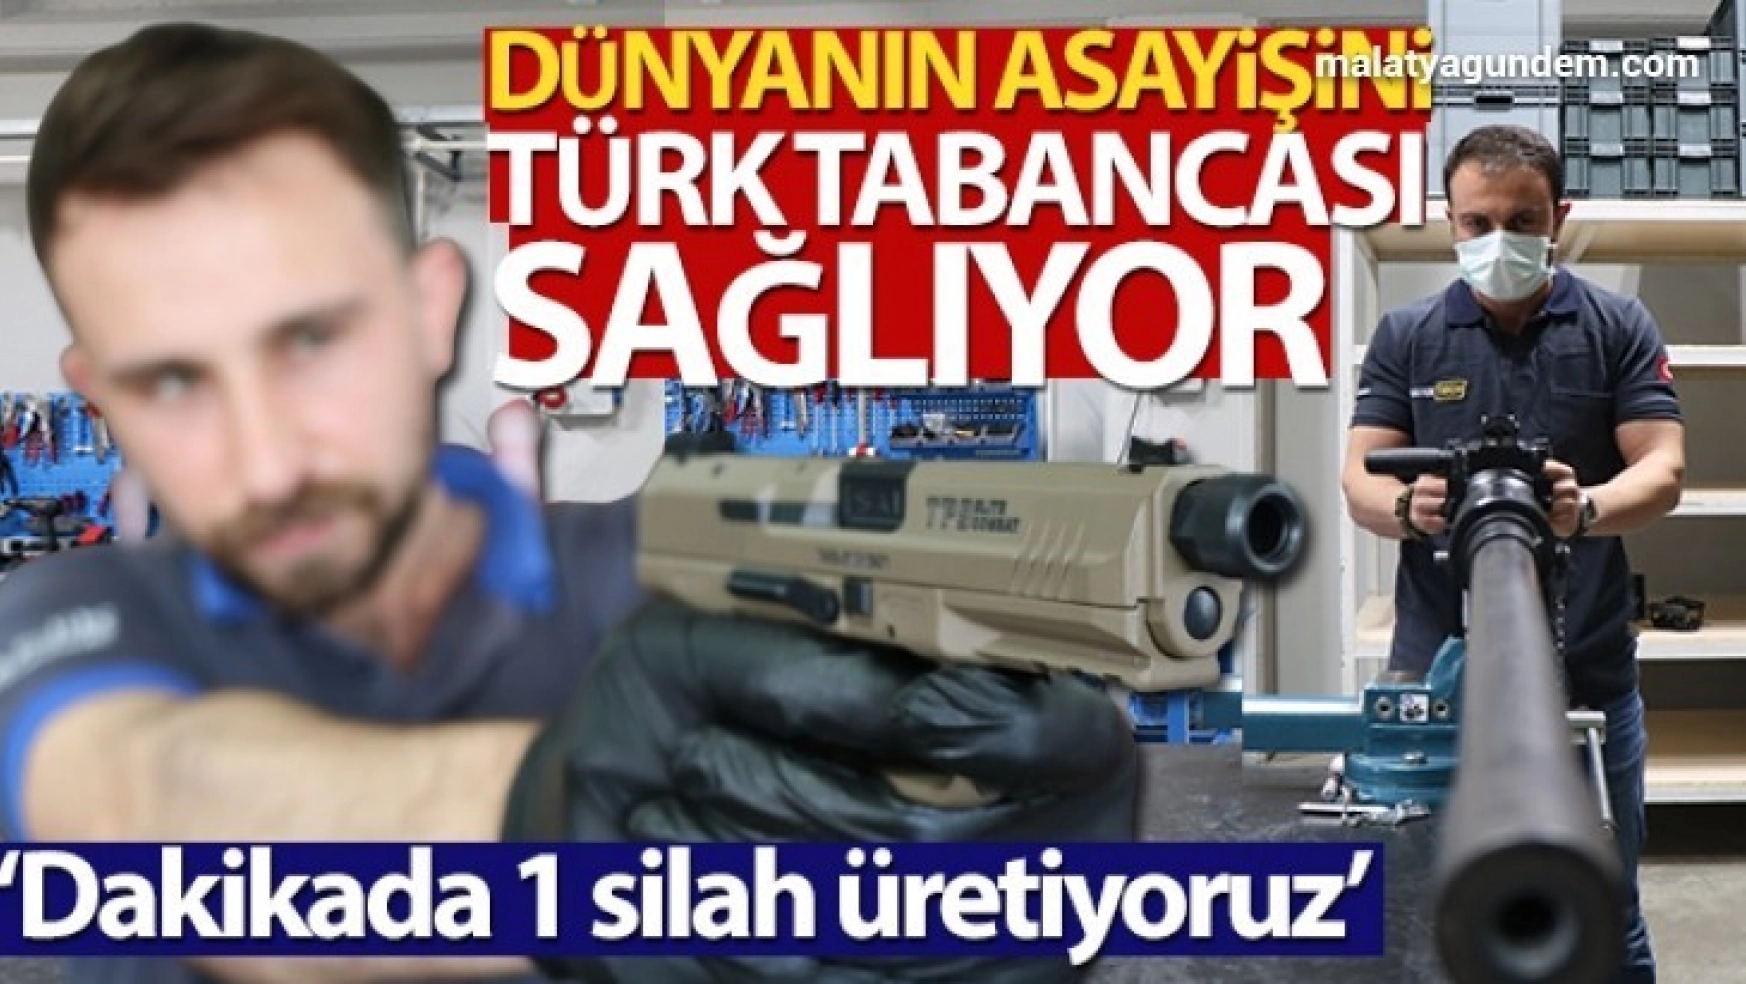 Türk tabancası, dünyanın asayişini sağlıyor